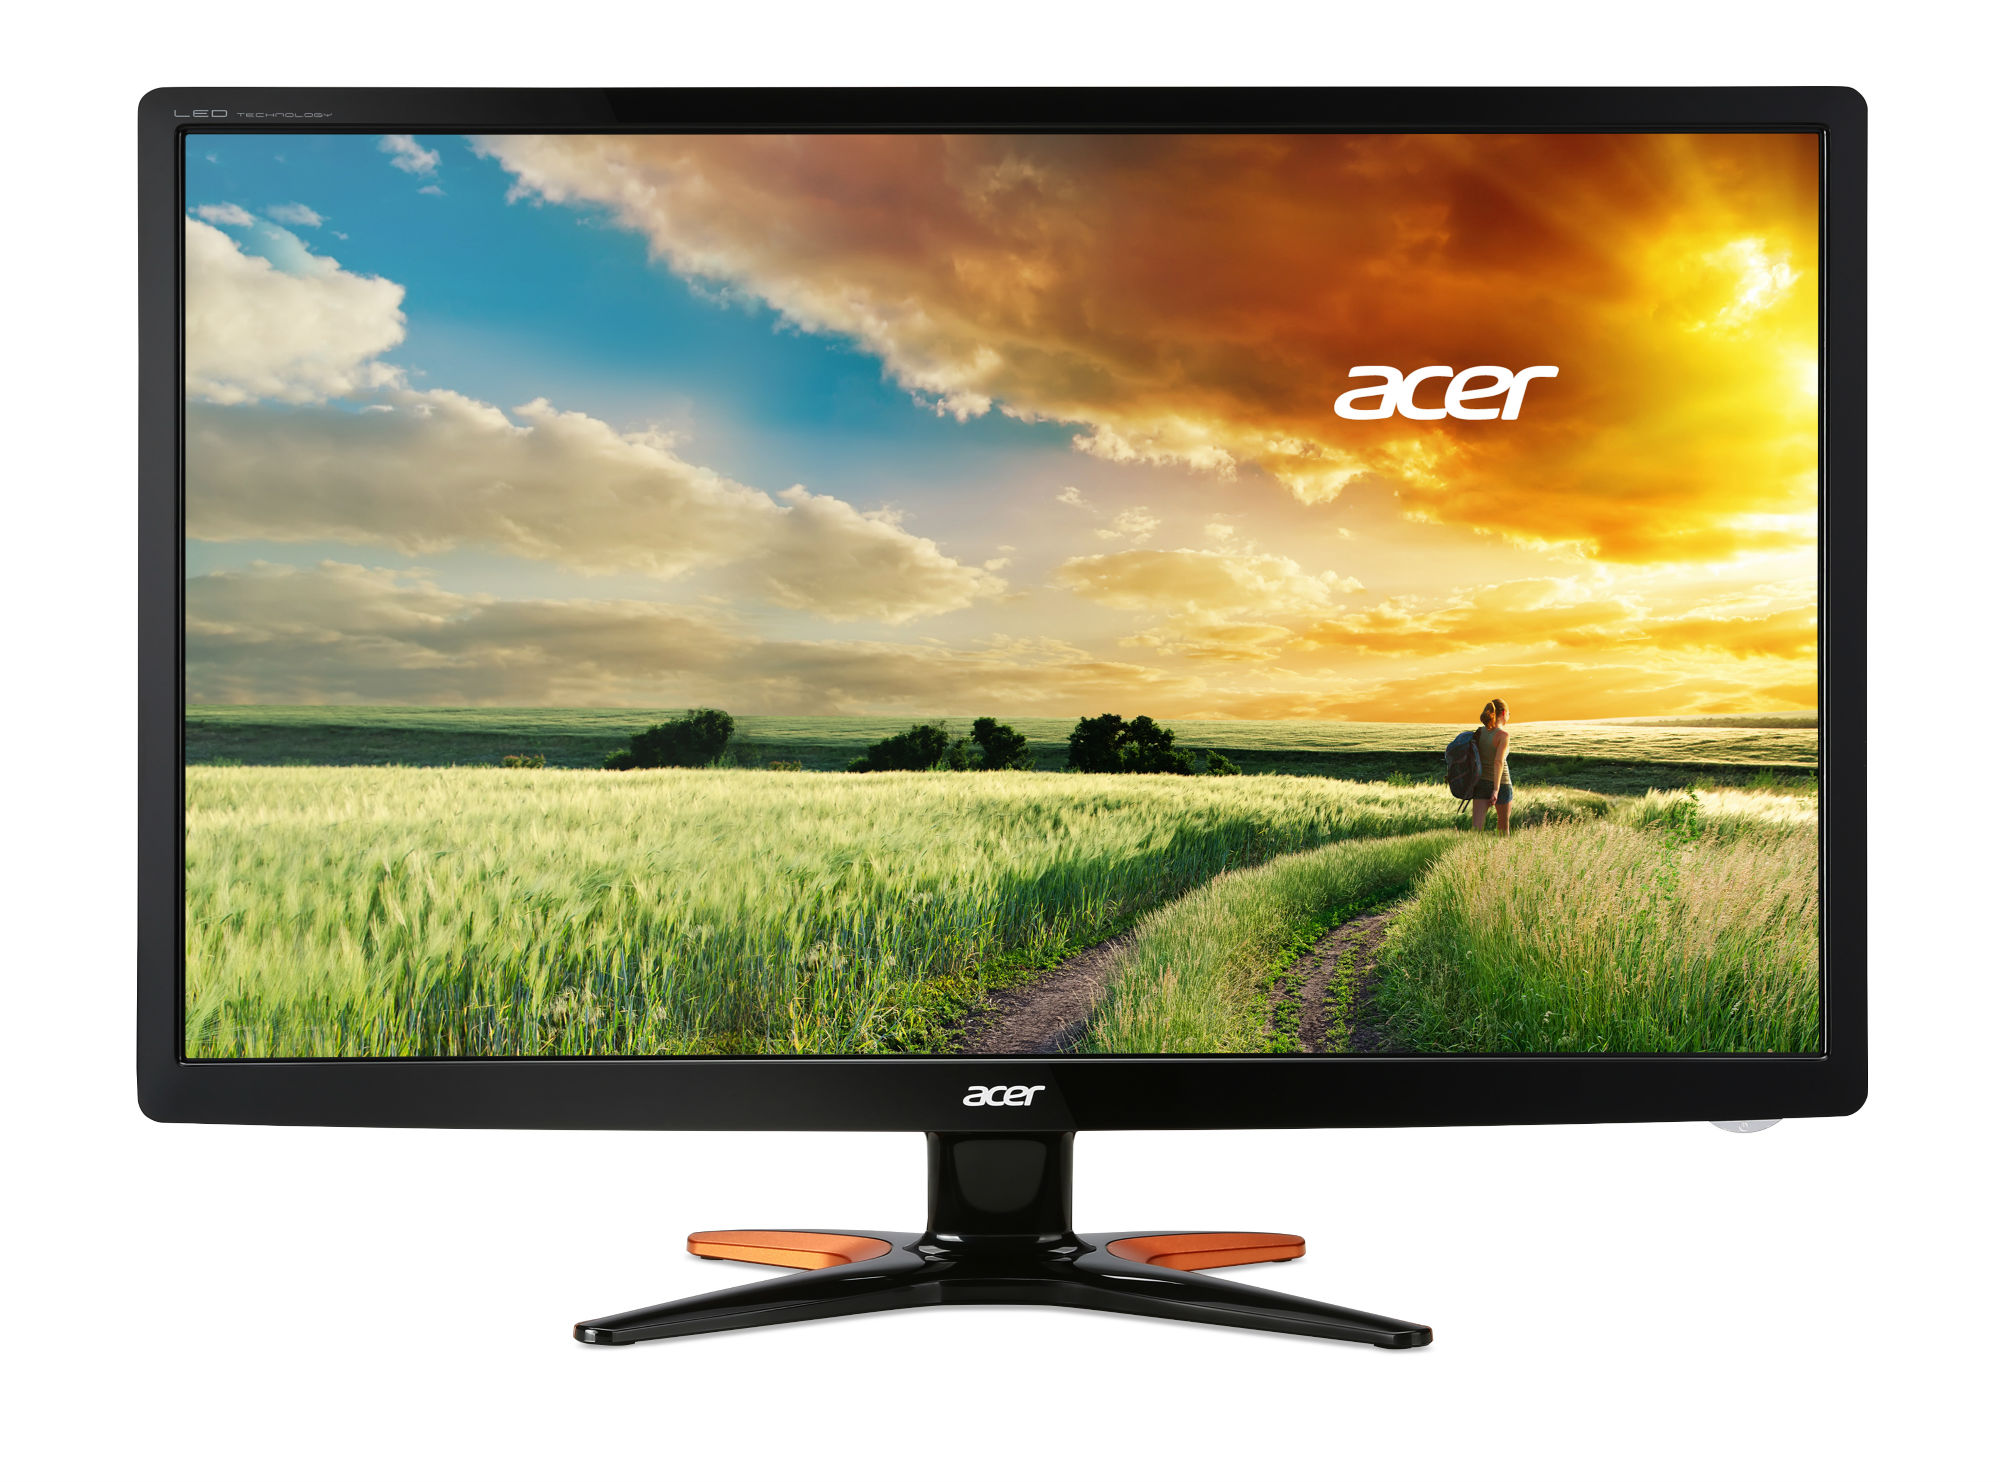  Monitor 3D LED Acer Predator GN246HL, 24", Full HD, Negru 